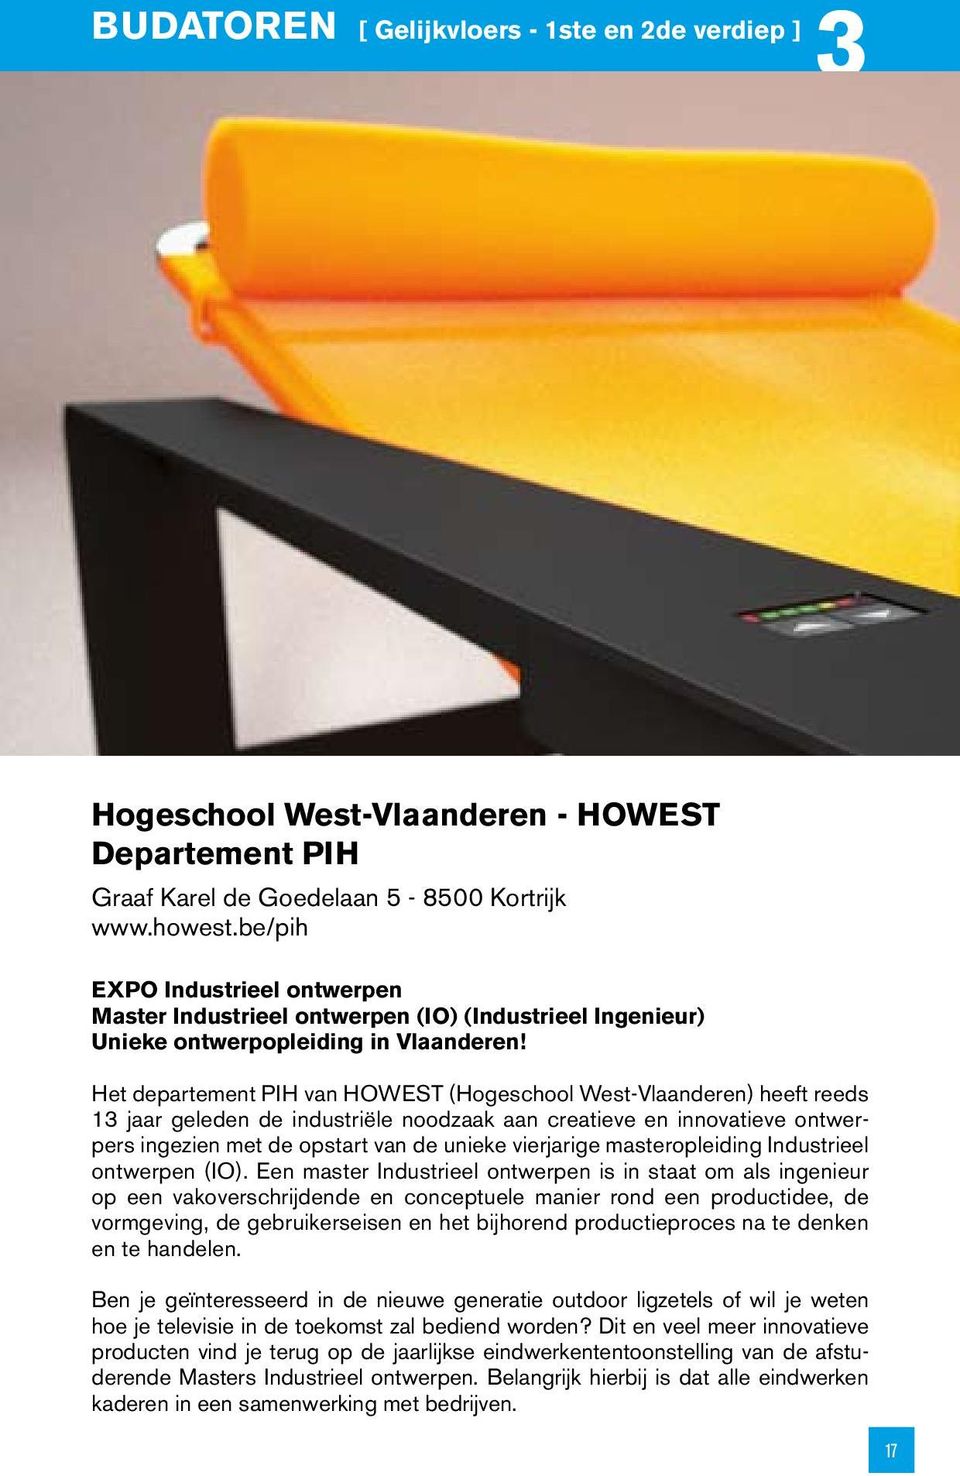 Het departement PIH van HOWEST (Hogeschool West-Vlaanderen) heeft reeds 13 jaar geleden de industriële noodzaak aan creatieve en innovatieve ontwerpers ingezien met de opstart van de unieke